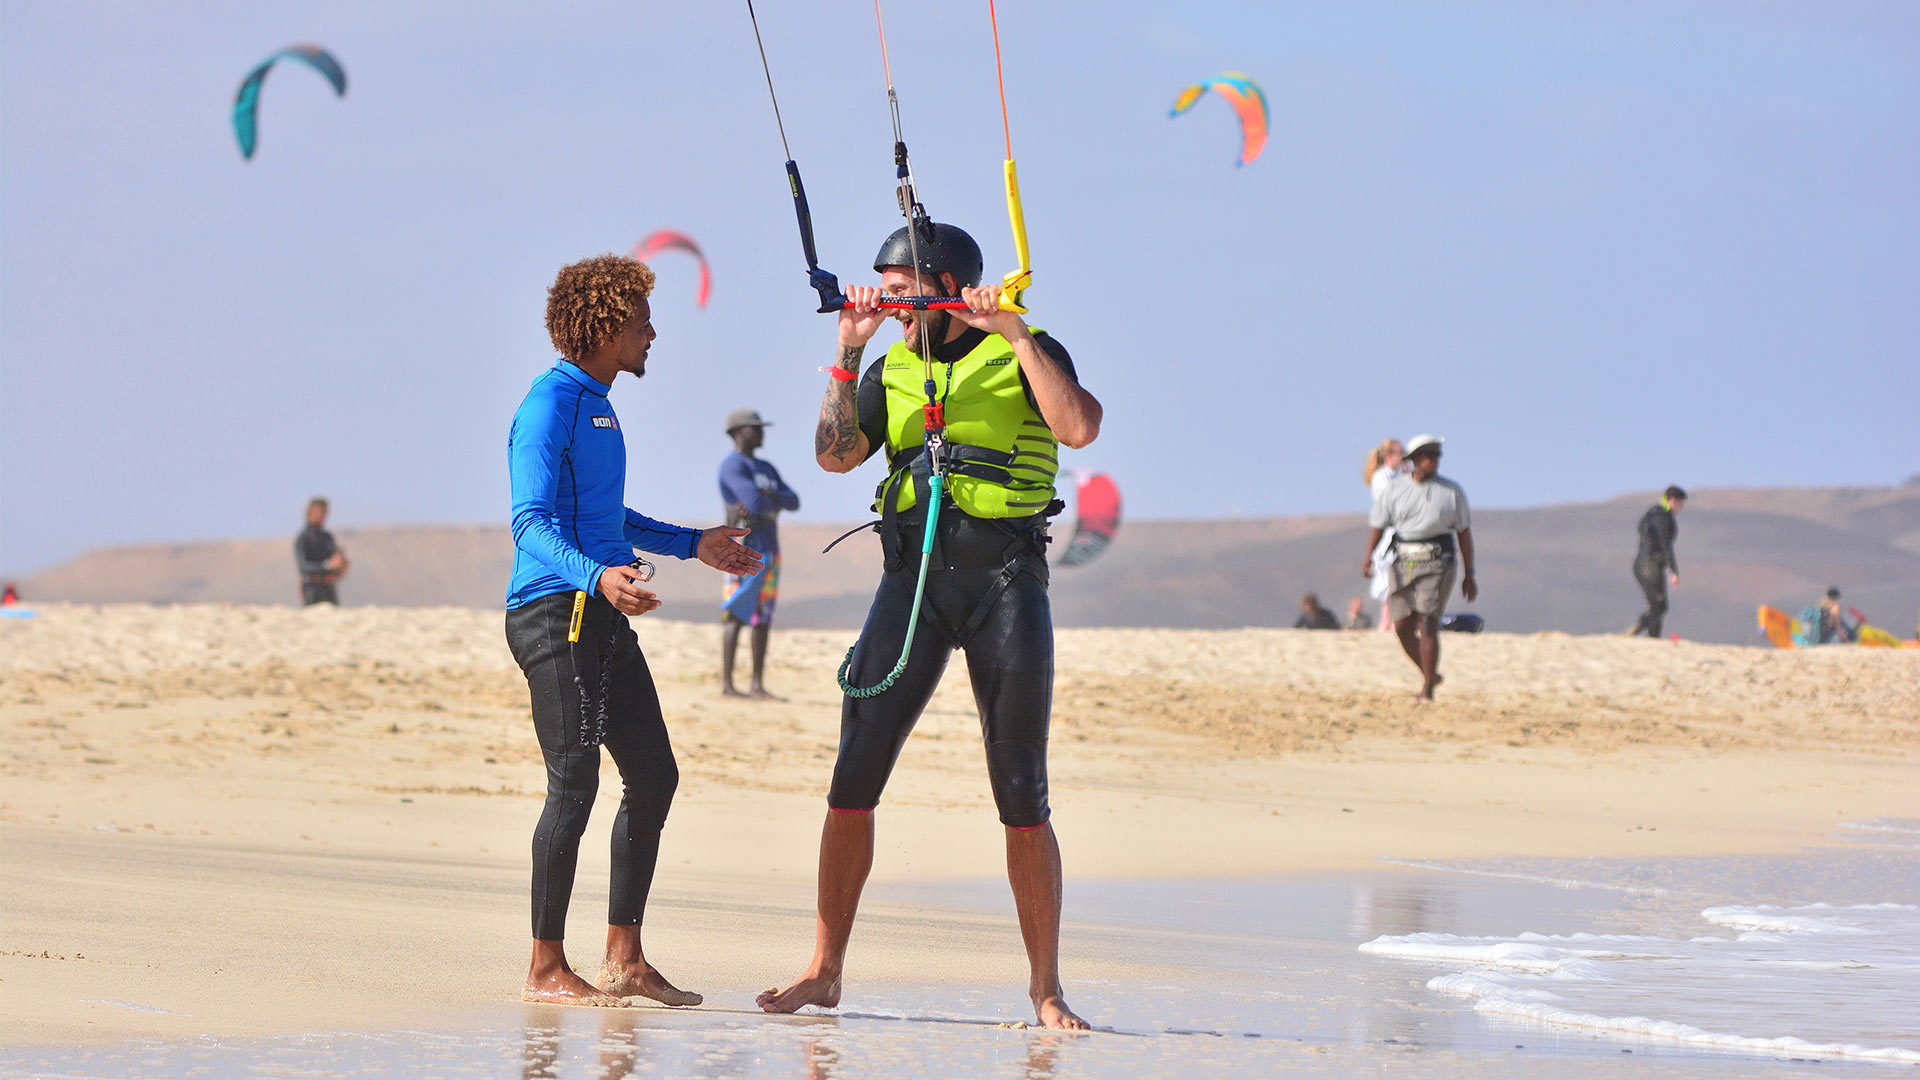 Moniteur de kitesurf donnant un cours sur la plage de kite beach à Sal au Cap Vert